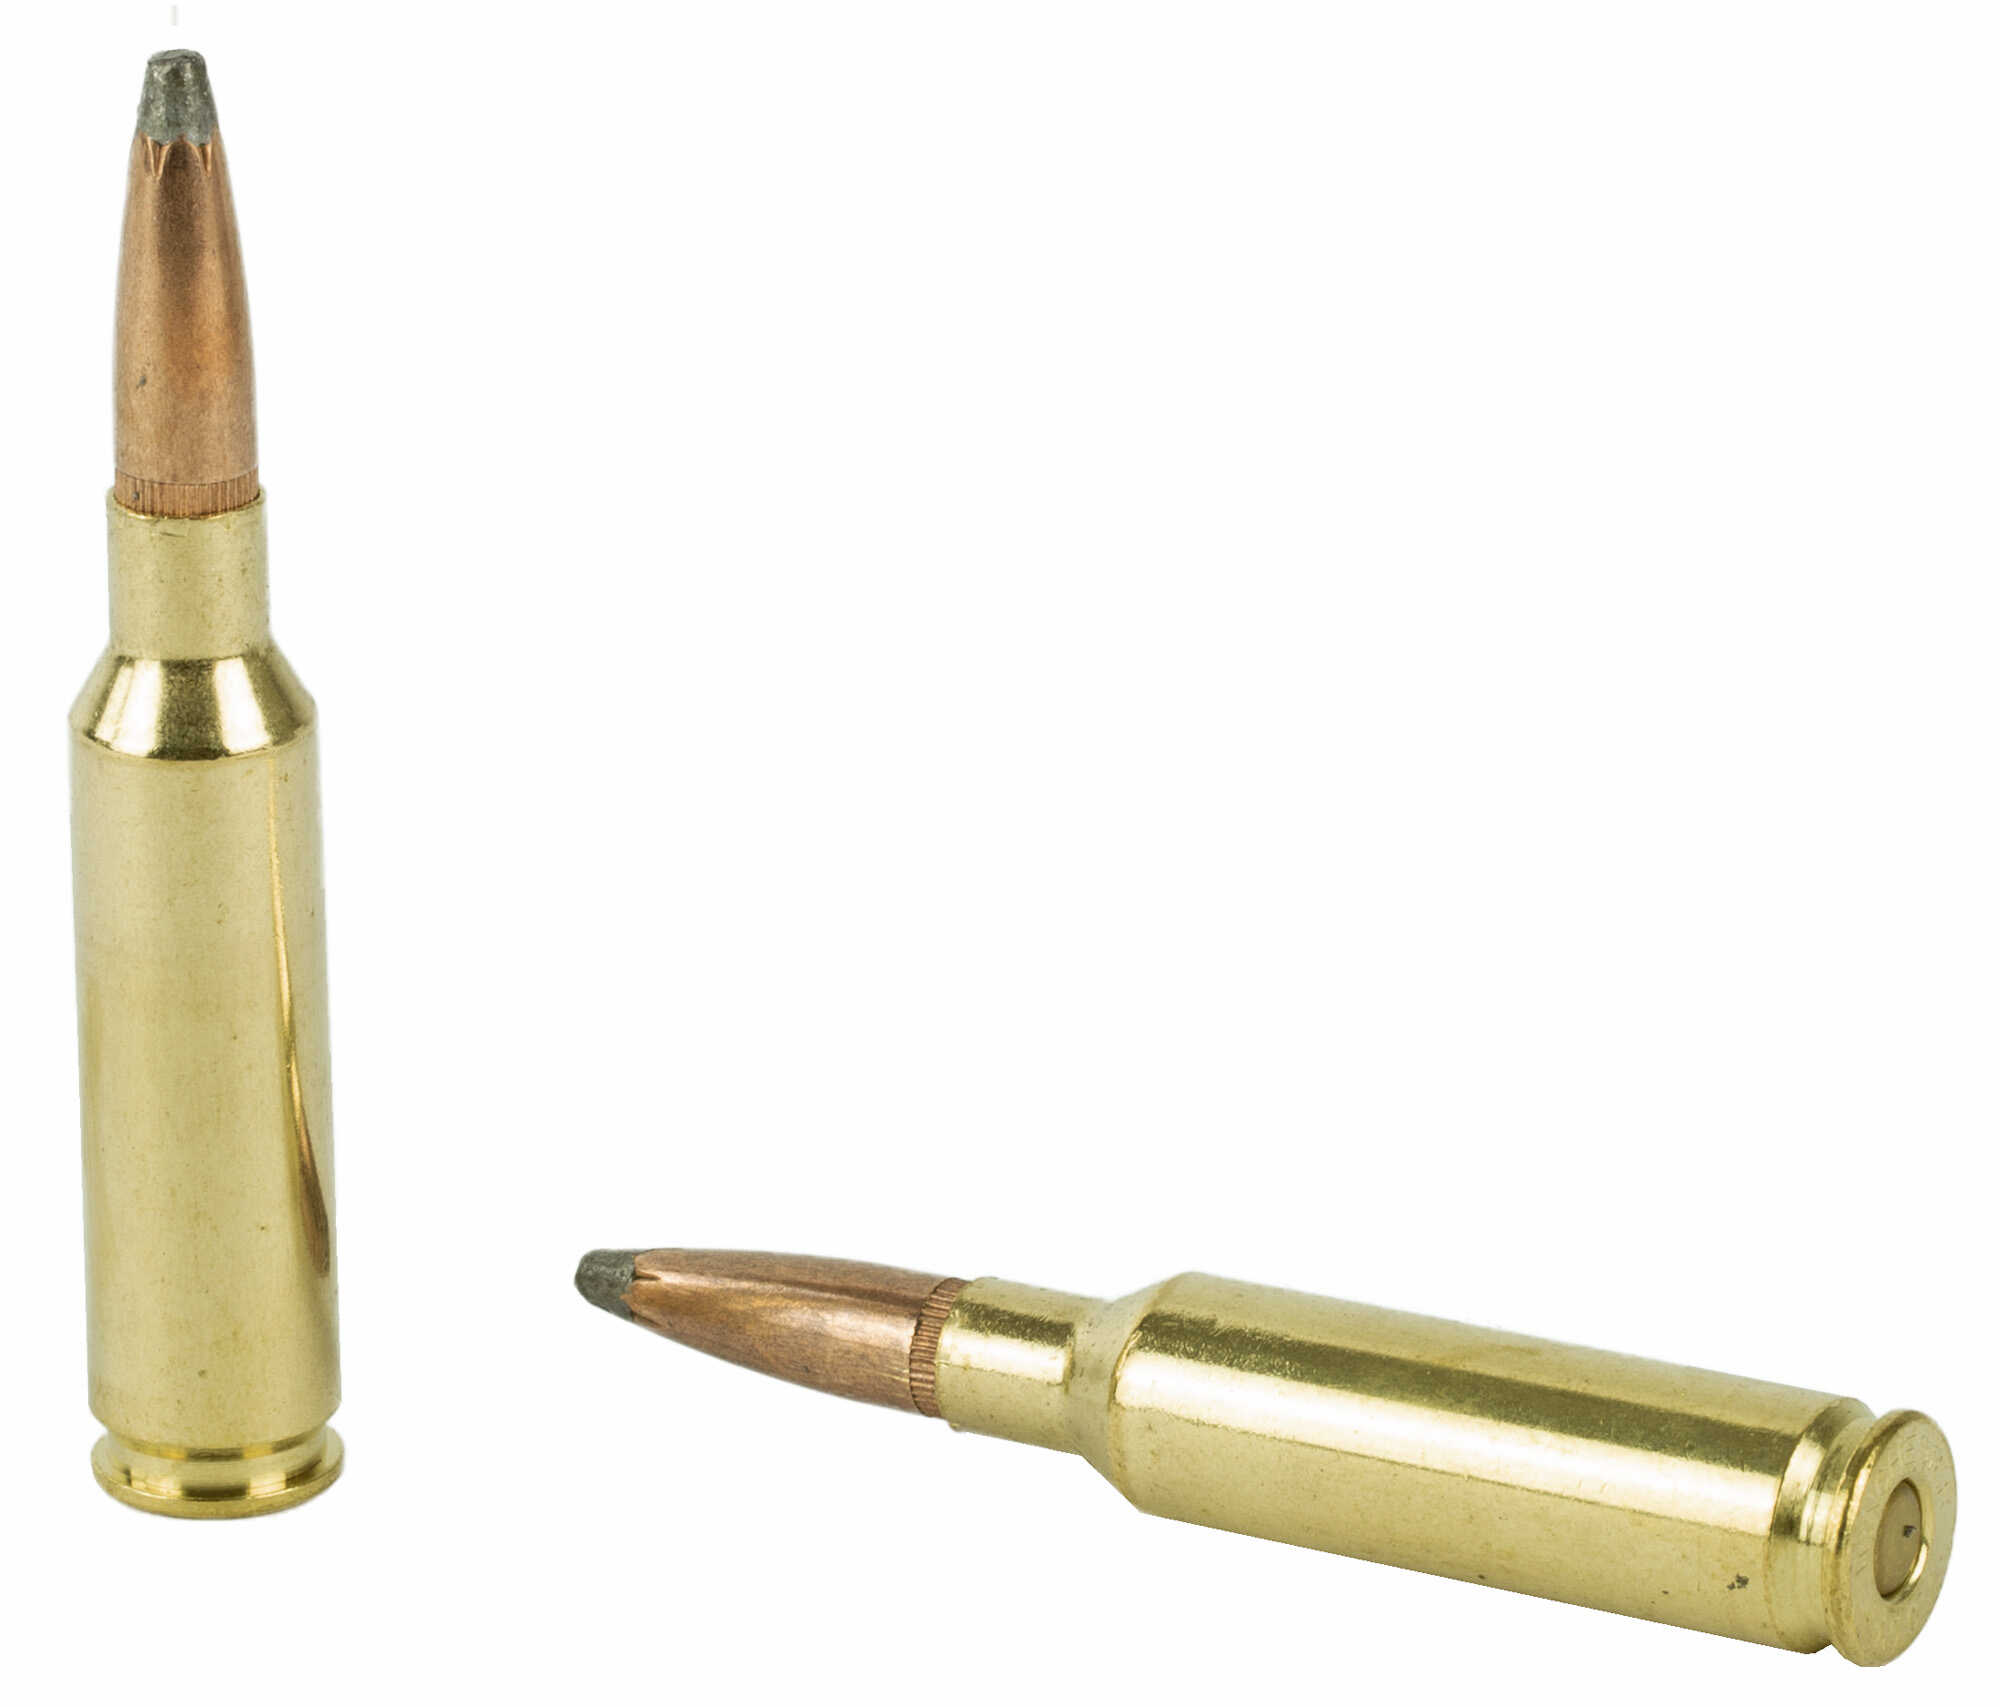 Winchester Ammo Super X 6.5 Creedmoor 129 gr 2820 fps Power-Point 20 Round Box